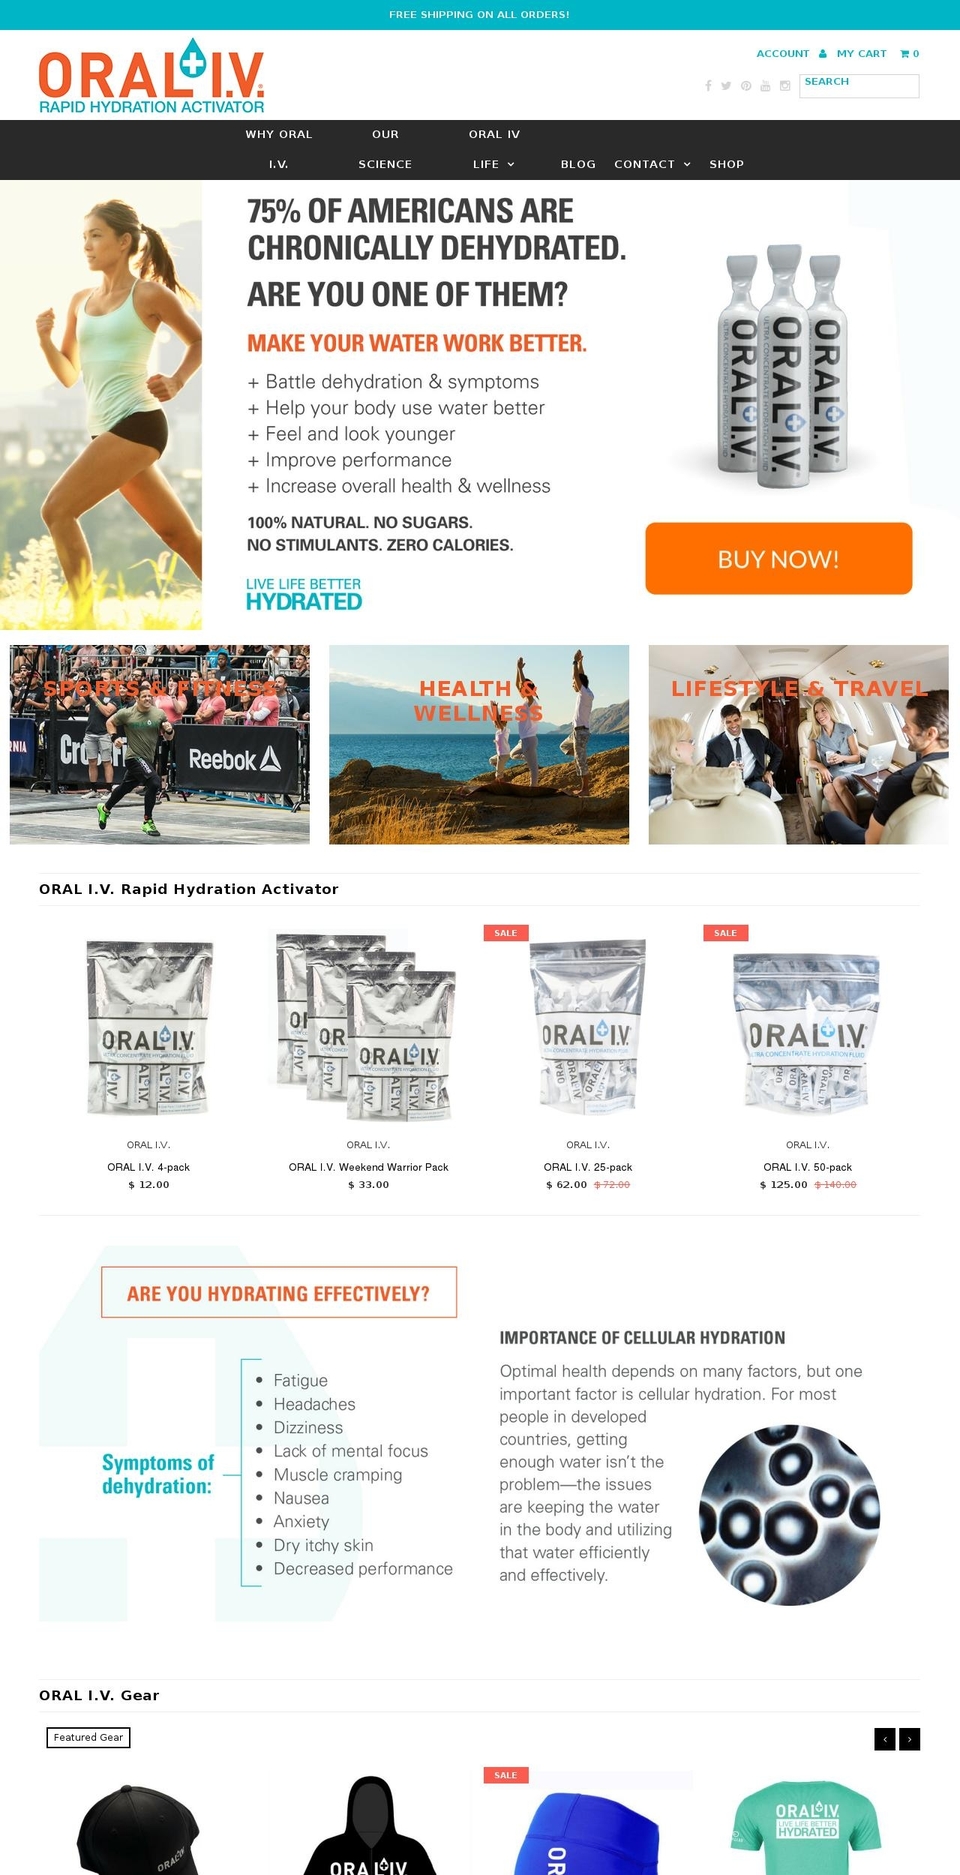 Narrative Shopify theme site example oraliv.com